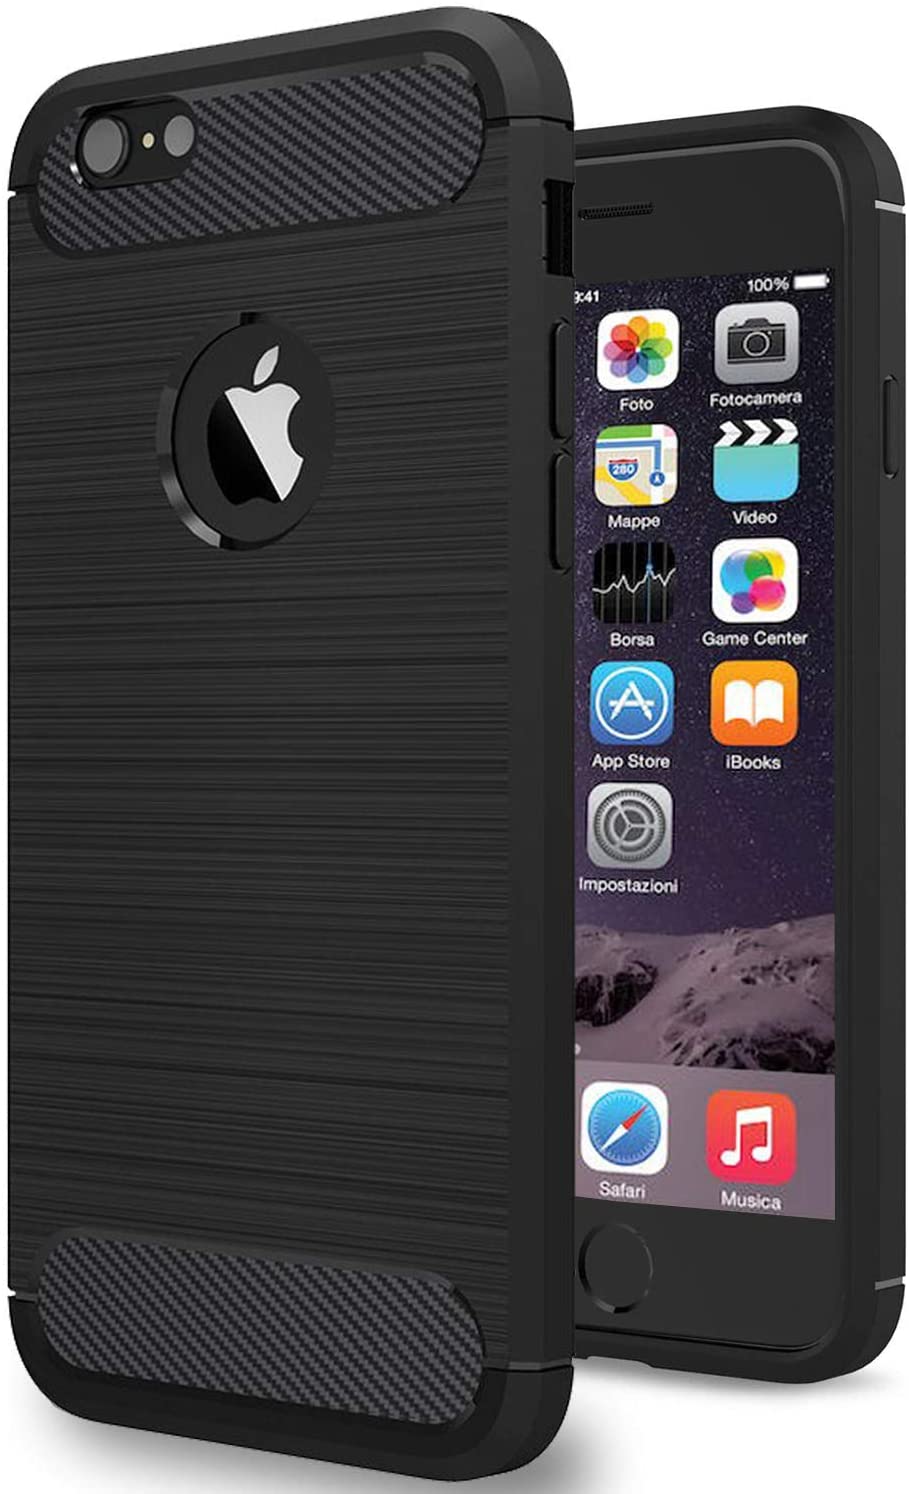 NEW'C Cover per iPhone 6/6s, con Urti Assobirmento e Fibra di Carbonio [Gel Flex Silicone] per iPhone 6/6S